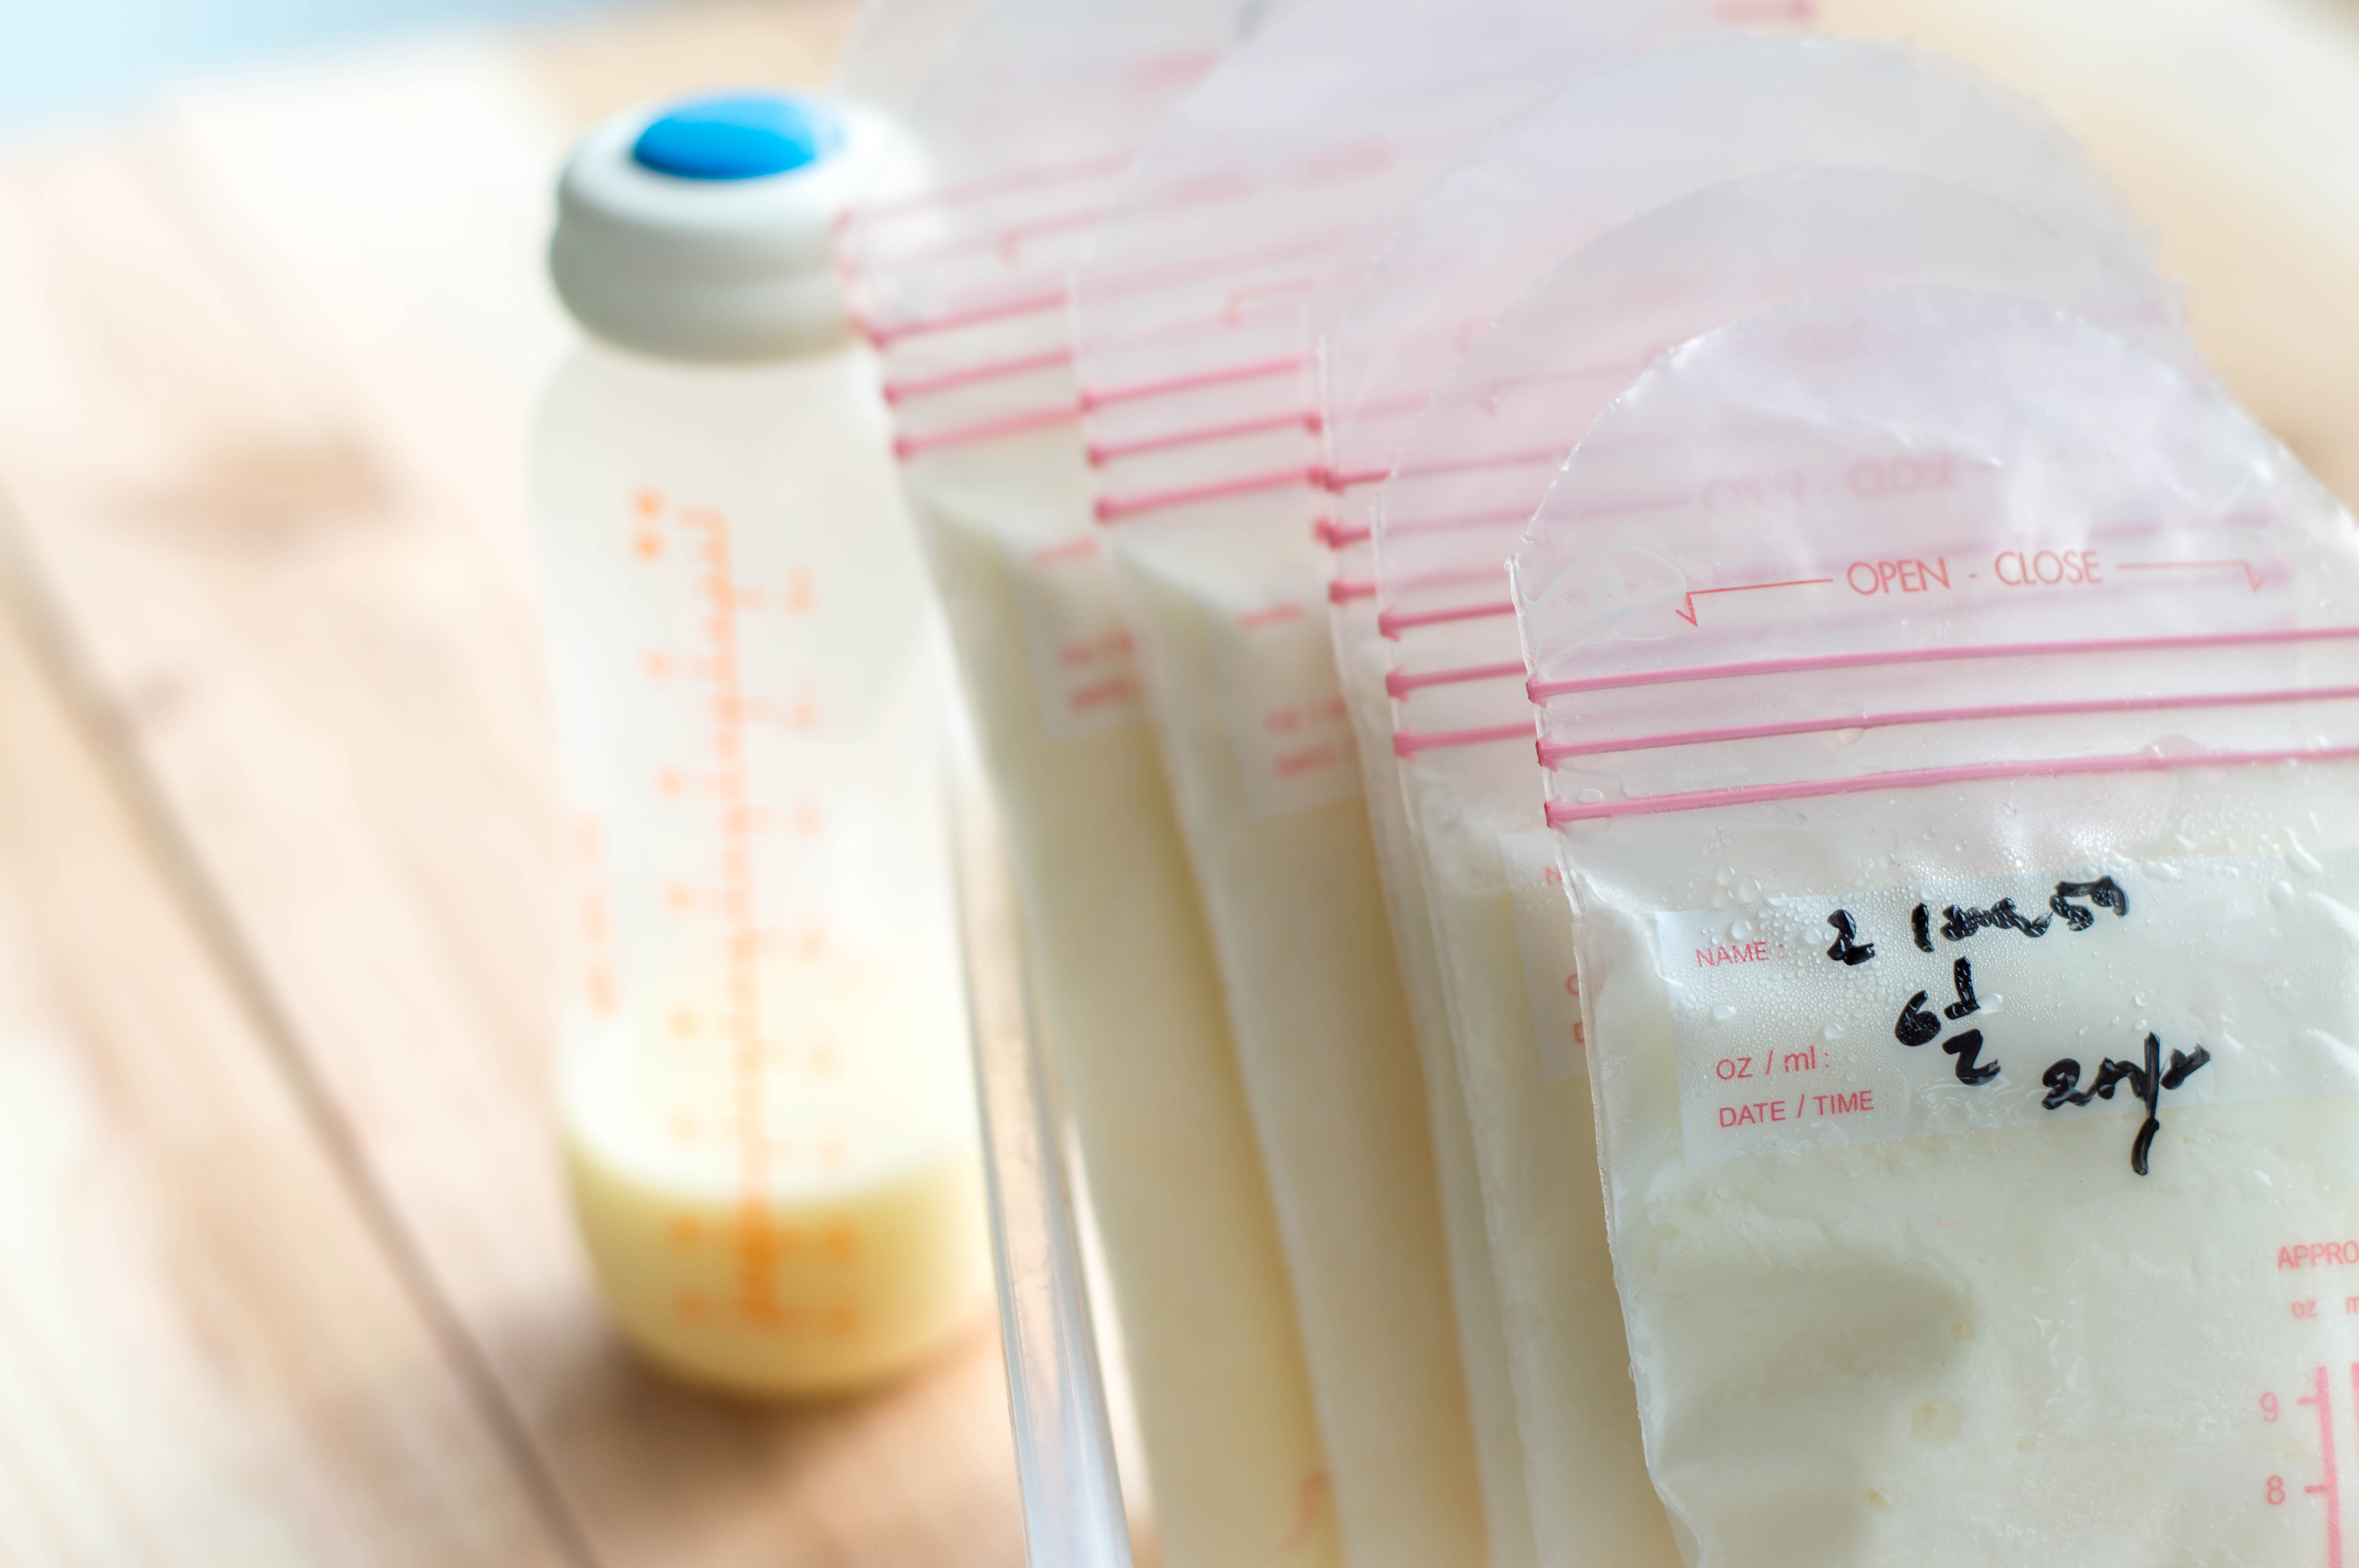 Mách mẹ cách bảo quản sữa mẹ đúng: Nên và không nên làm gì?